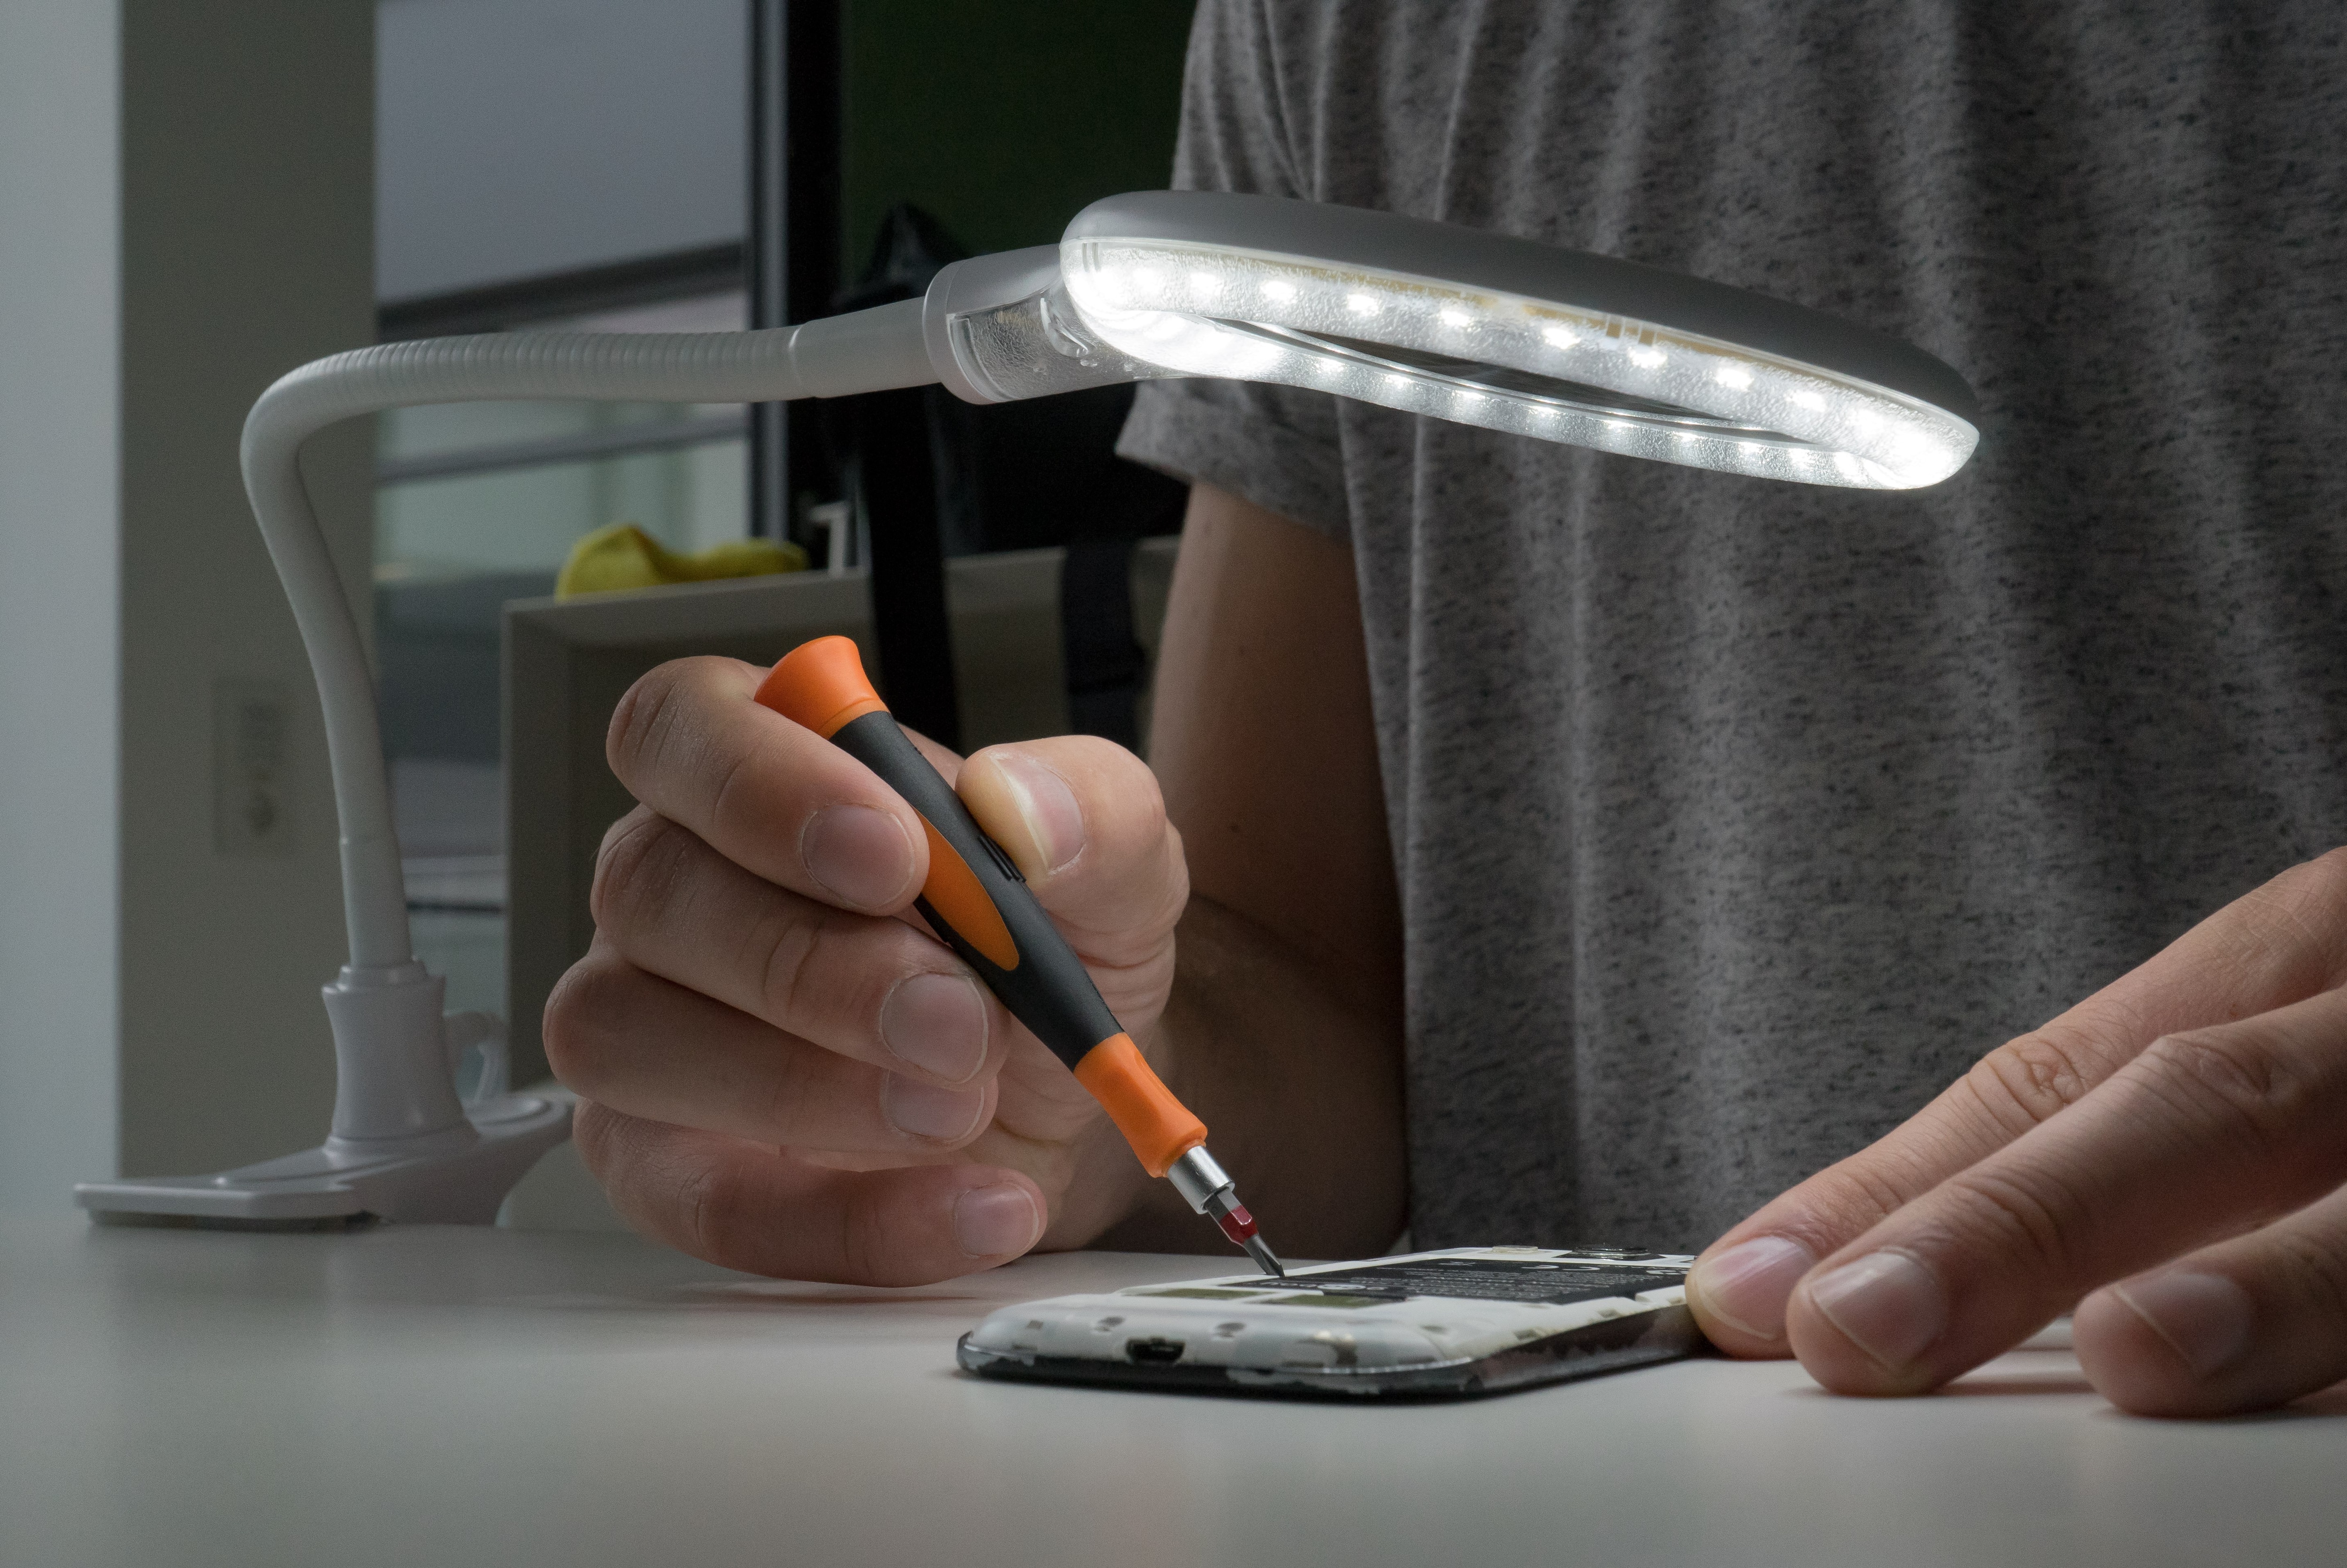 LED lamp met vergrootglas